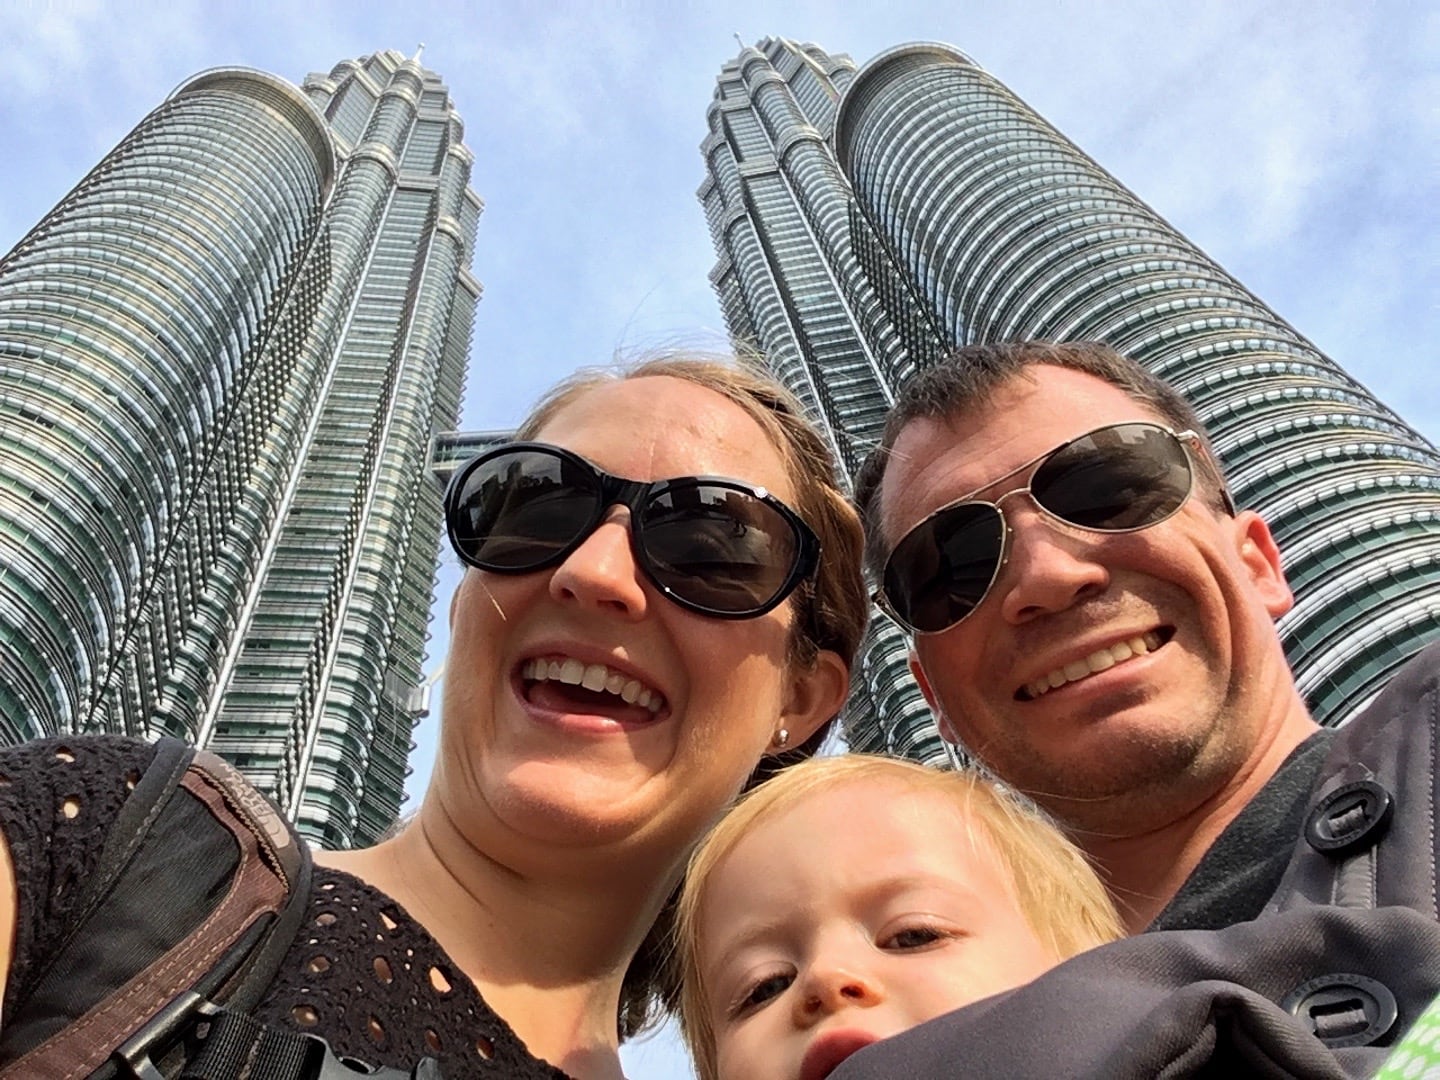 Petronas Towers & Jalan Alor Kuala Lumpur Malaysia